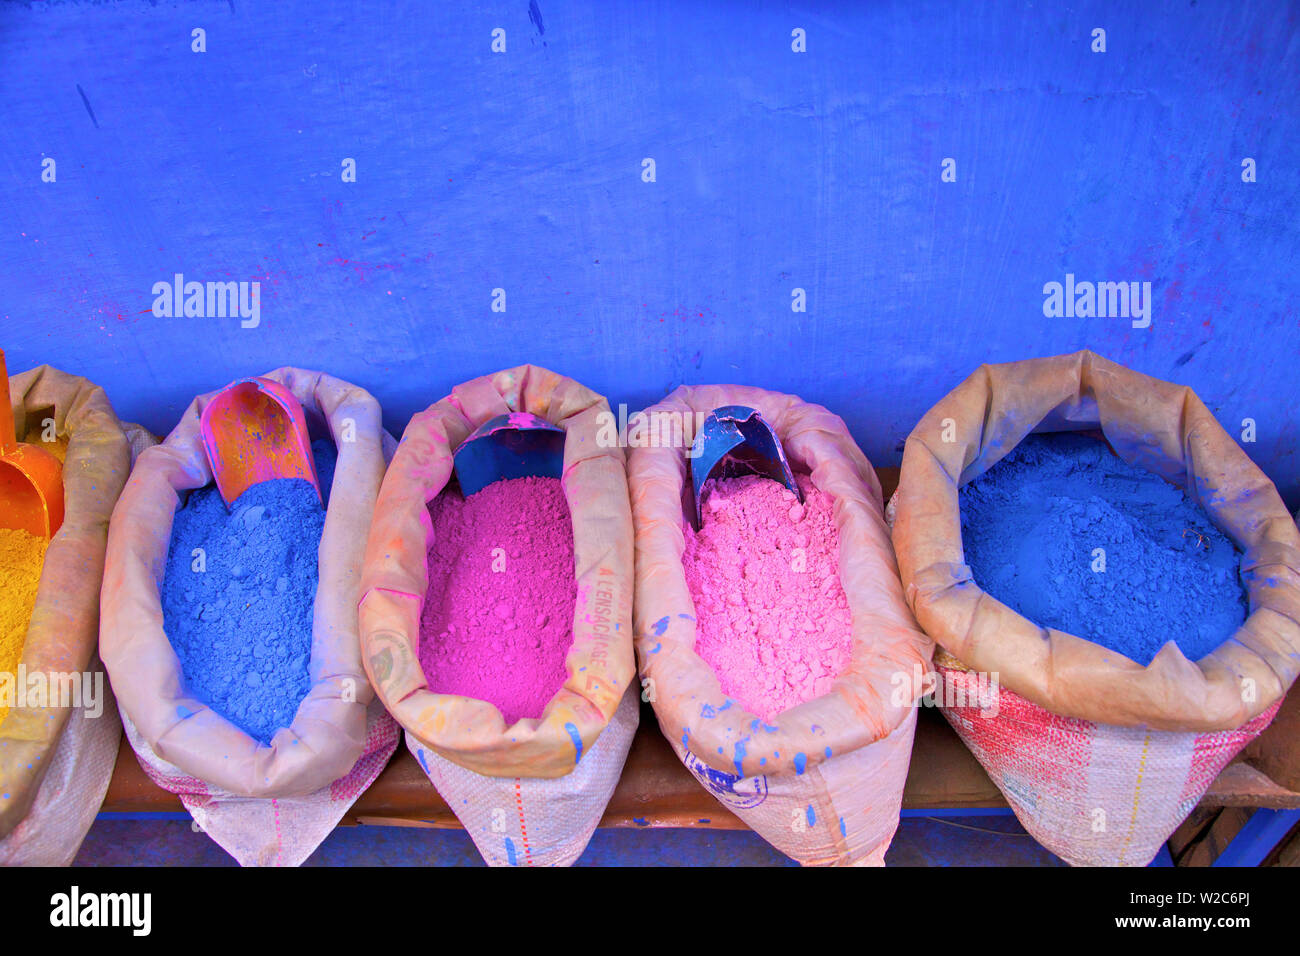 Sacs de pigments en poudre pour faire de la peinture, Chefchaouen, Maroc, Afrique du Nord Banque D'Images